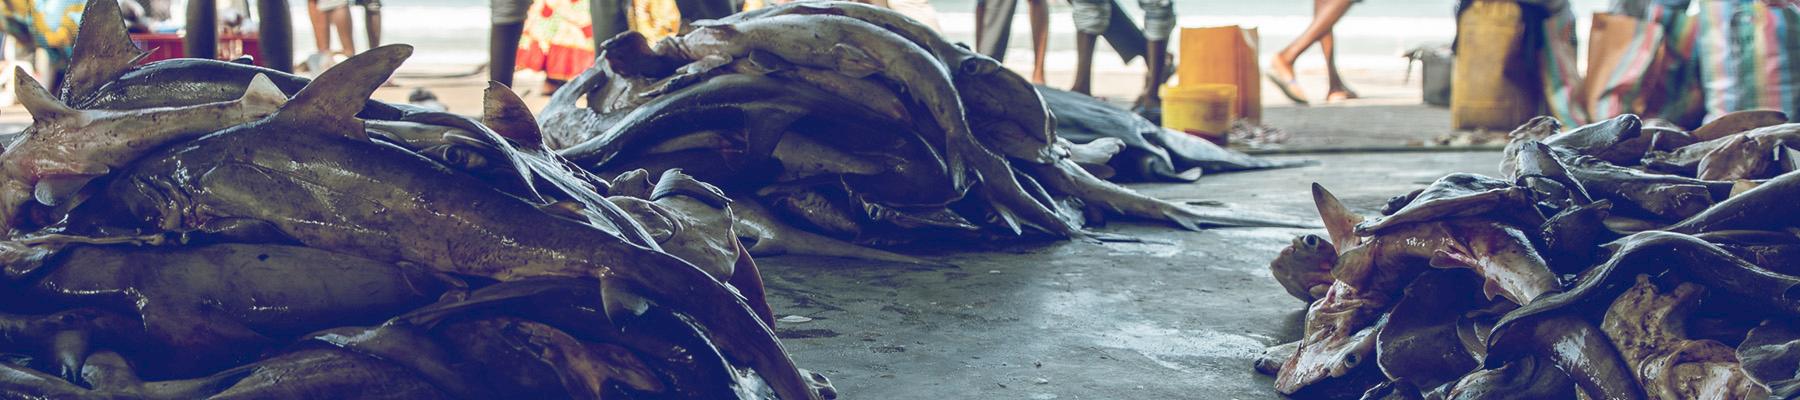 Une zone ouverte au sol en béton est utilisée pour la manipulation et la vente des requins. Photo: Longshot productions / TRAFFIC